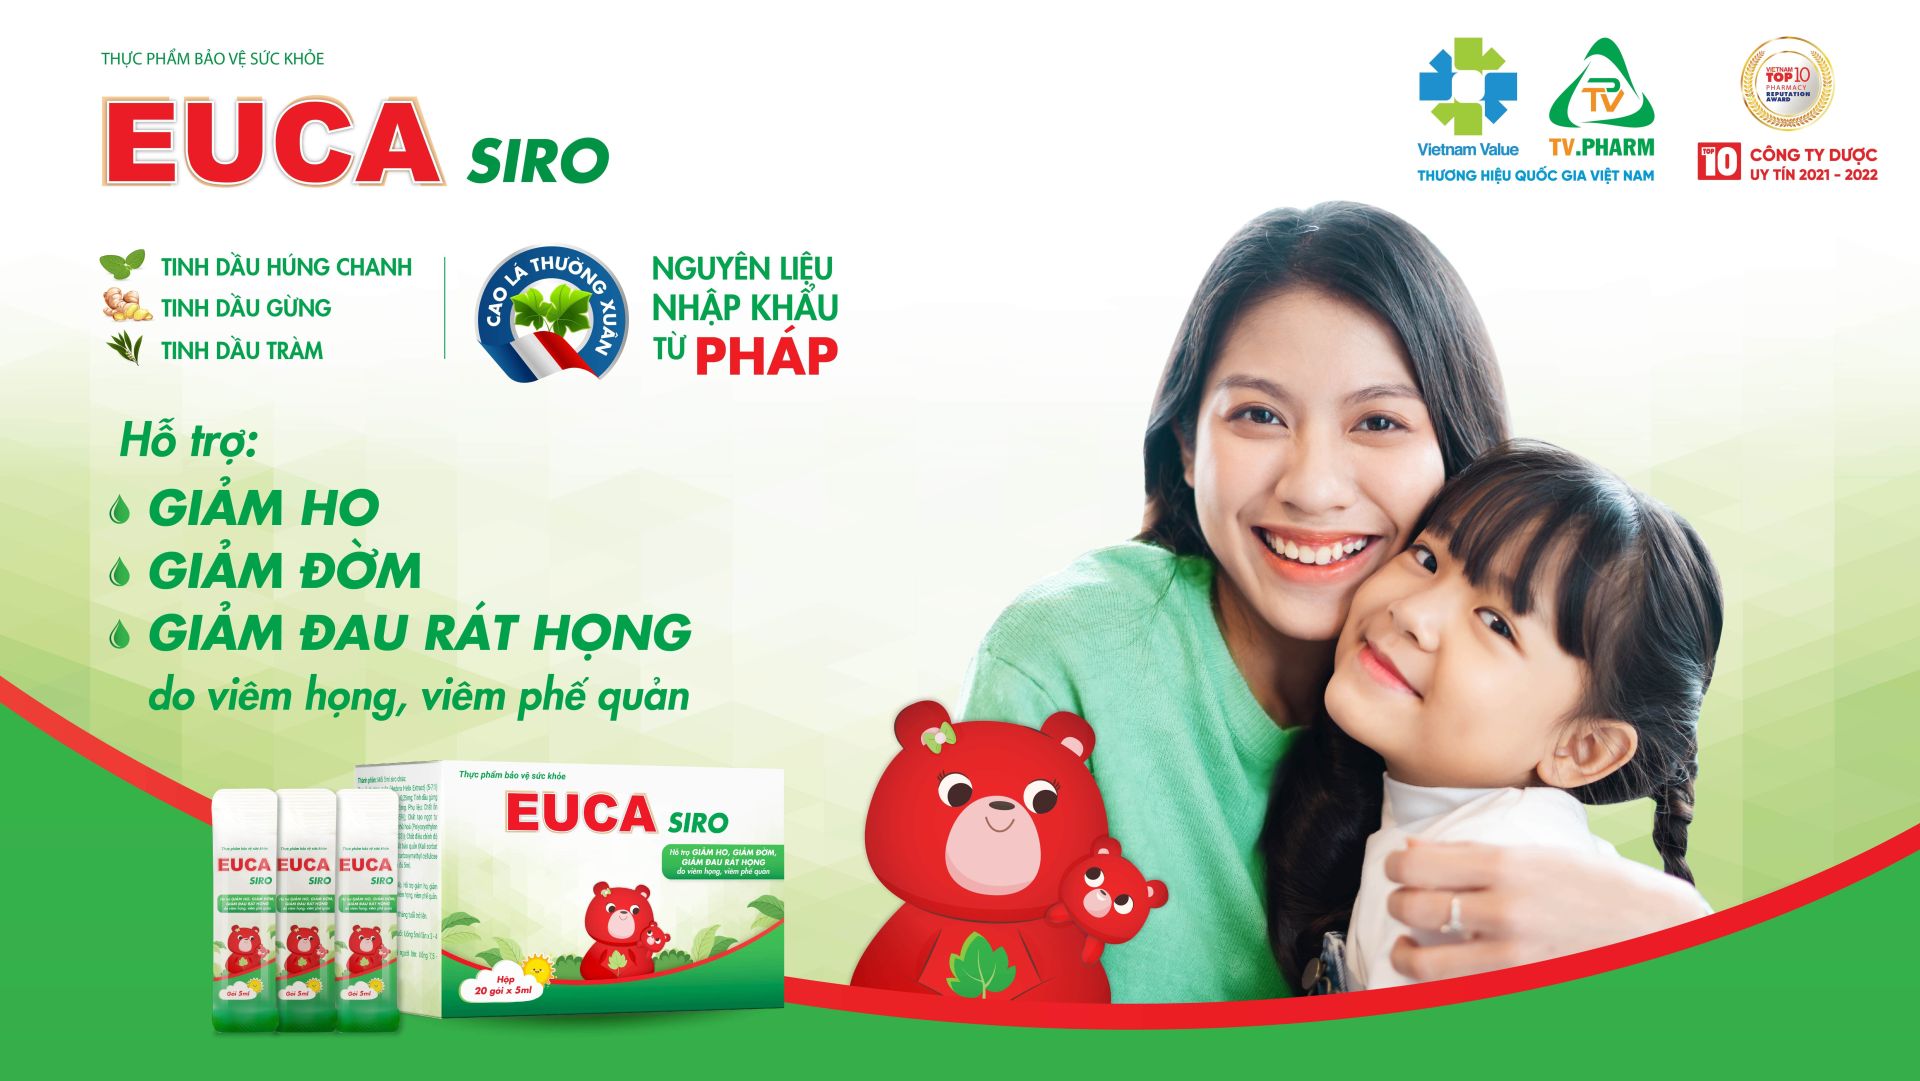 EUCA Siro kết hợp 4 dược liệu thiên nhiên bảo vệ đường hô hấp của trẻ